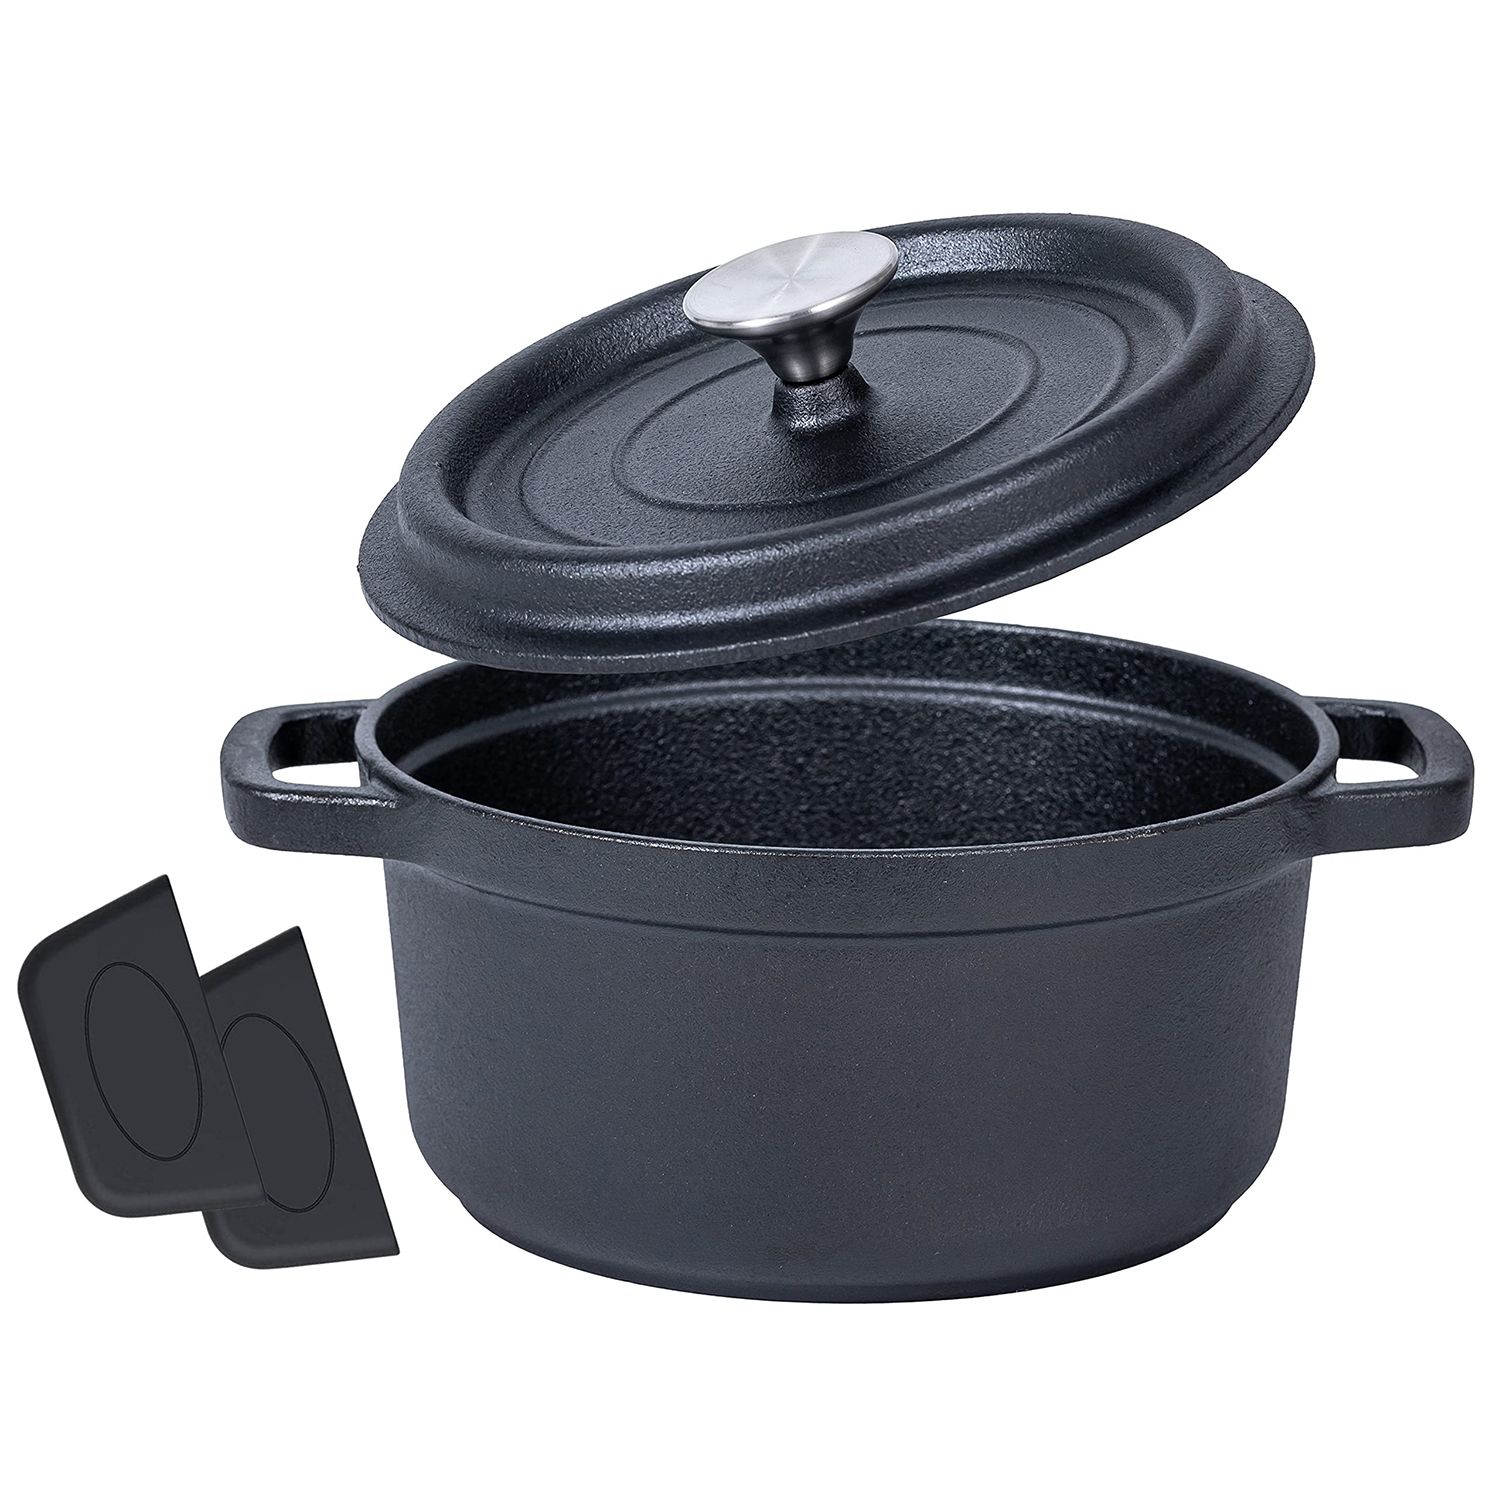 LEXI HOME 5 qt. Durable Cast Iron Low Pot Dutch Oven in Blue Ombre